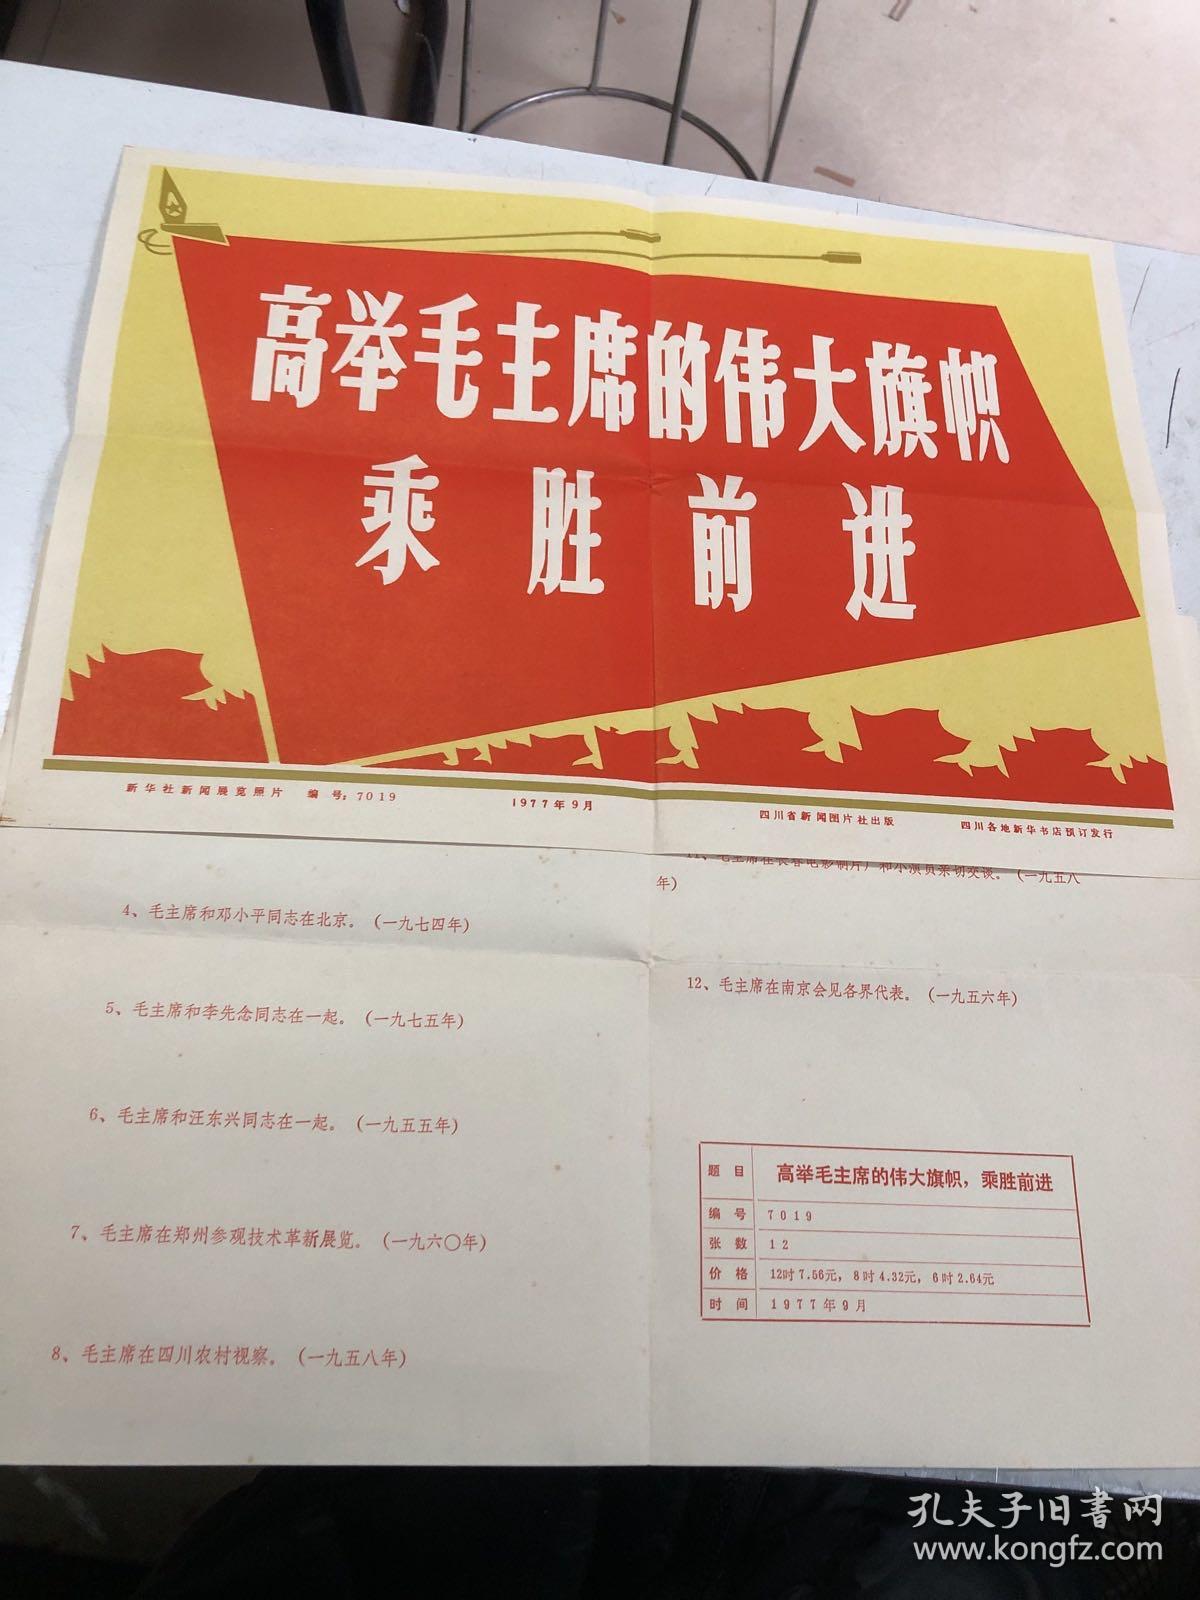 黑白老照片毛主席照片：新华社新闻展览照片《高举毛主席伟大旗帜乘胜前进》12张全，编号1409，内含12张黑白照片和1张照片说明及1张1977年宣传画，包老包真